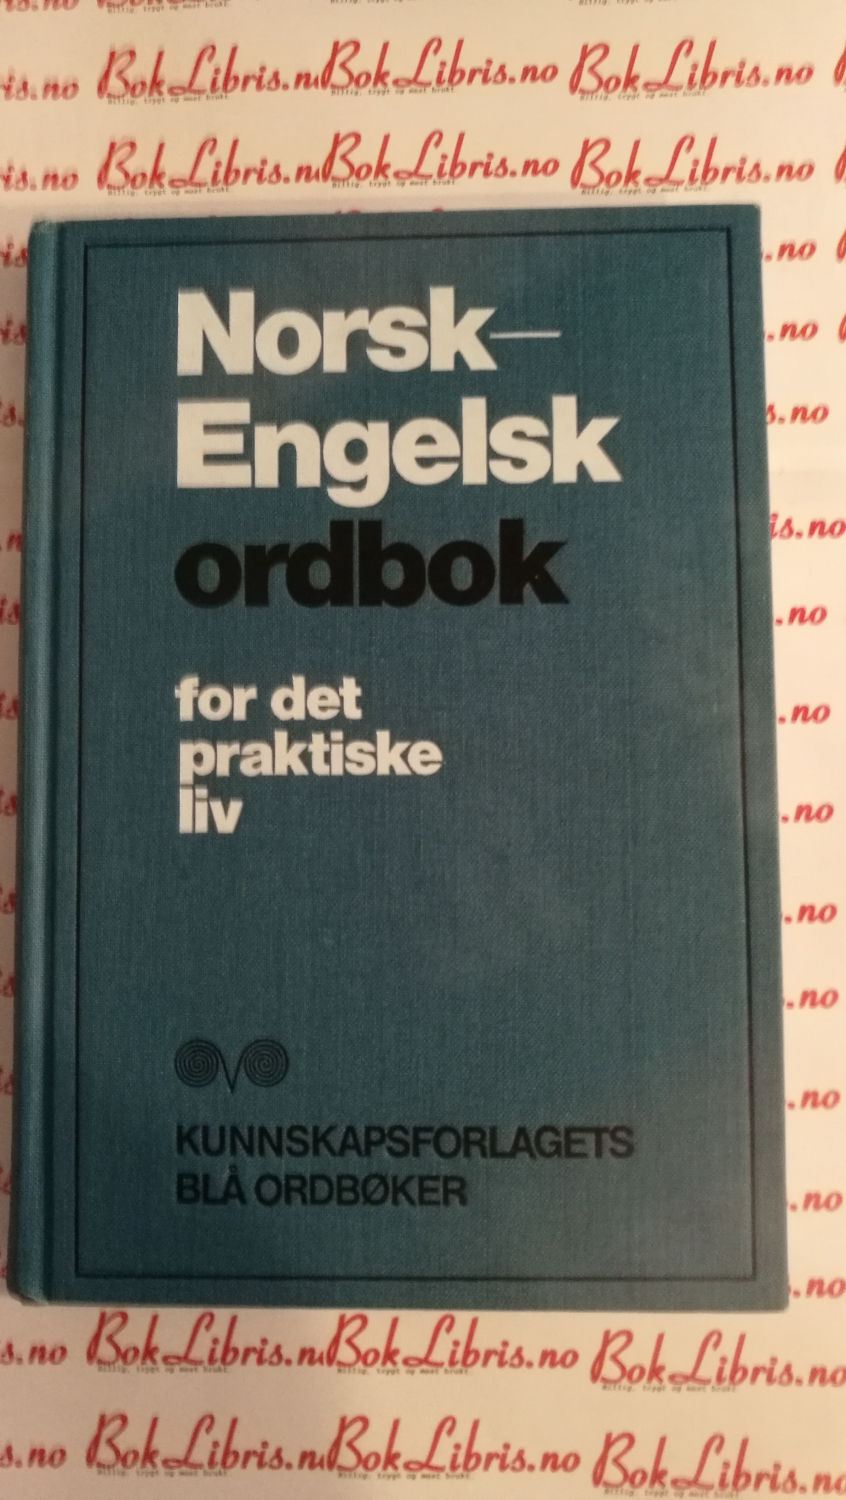 engelsk oversetter til norsk download